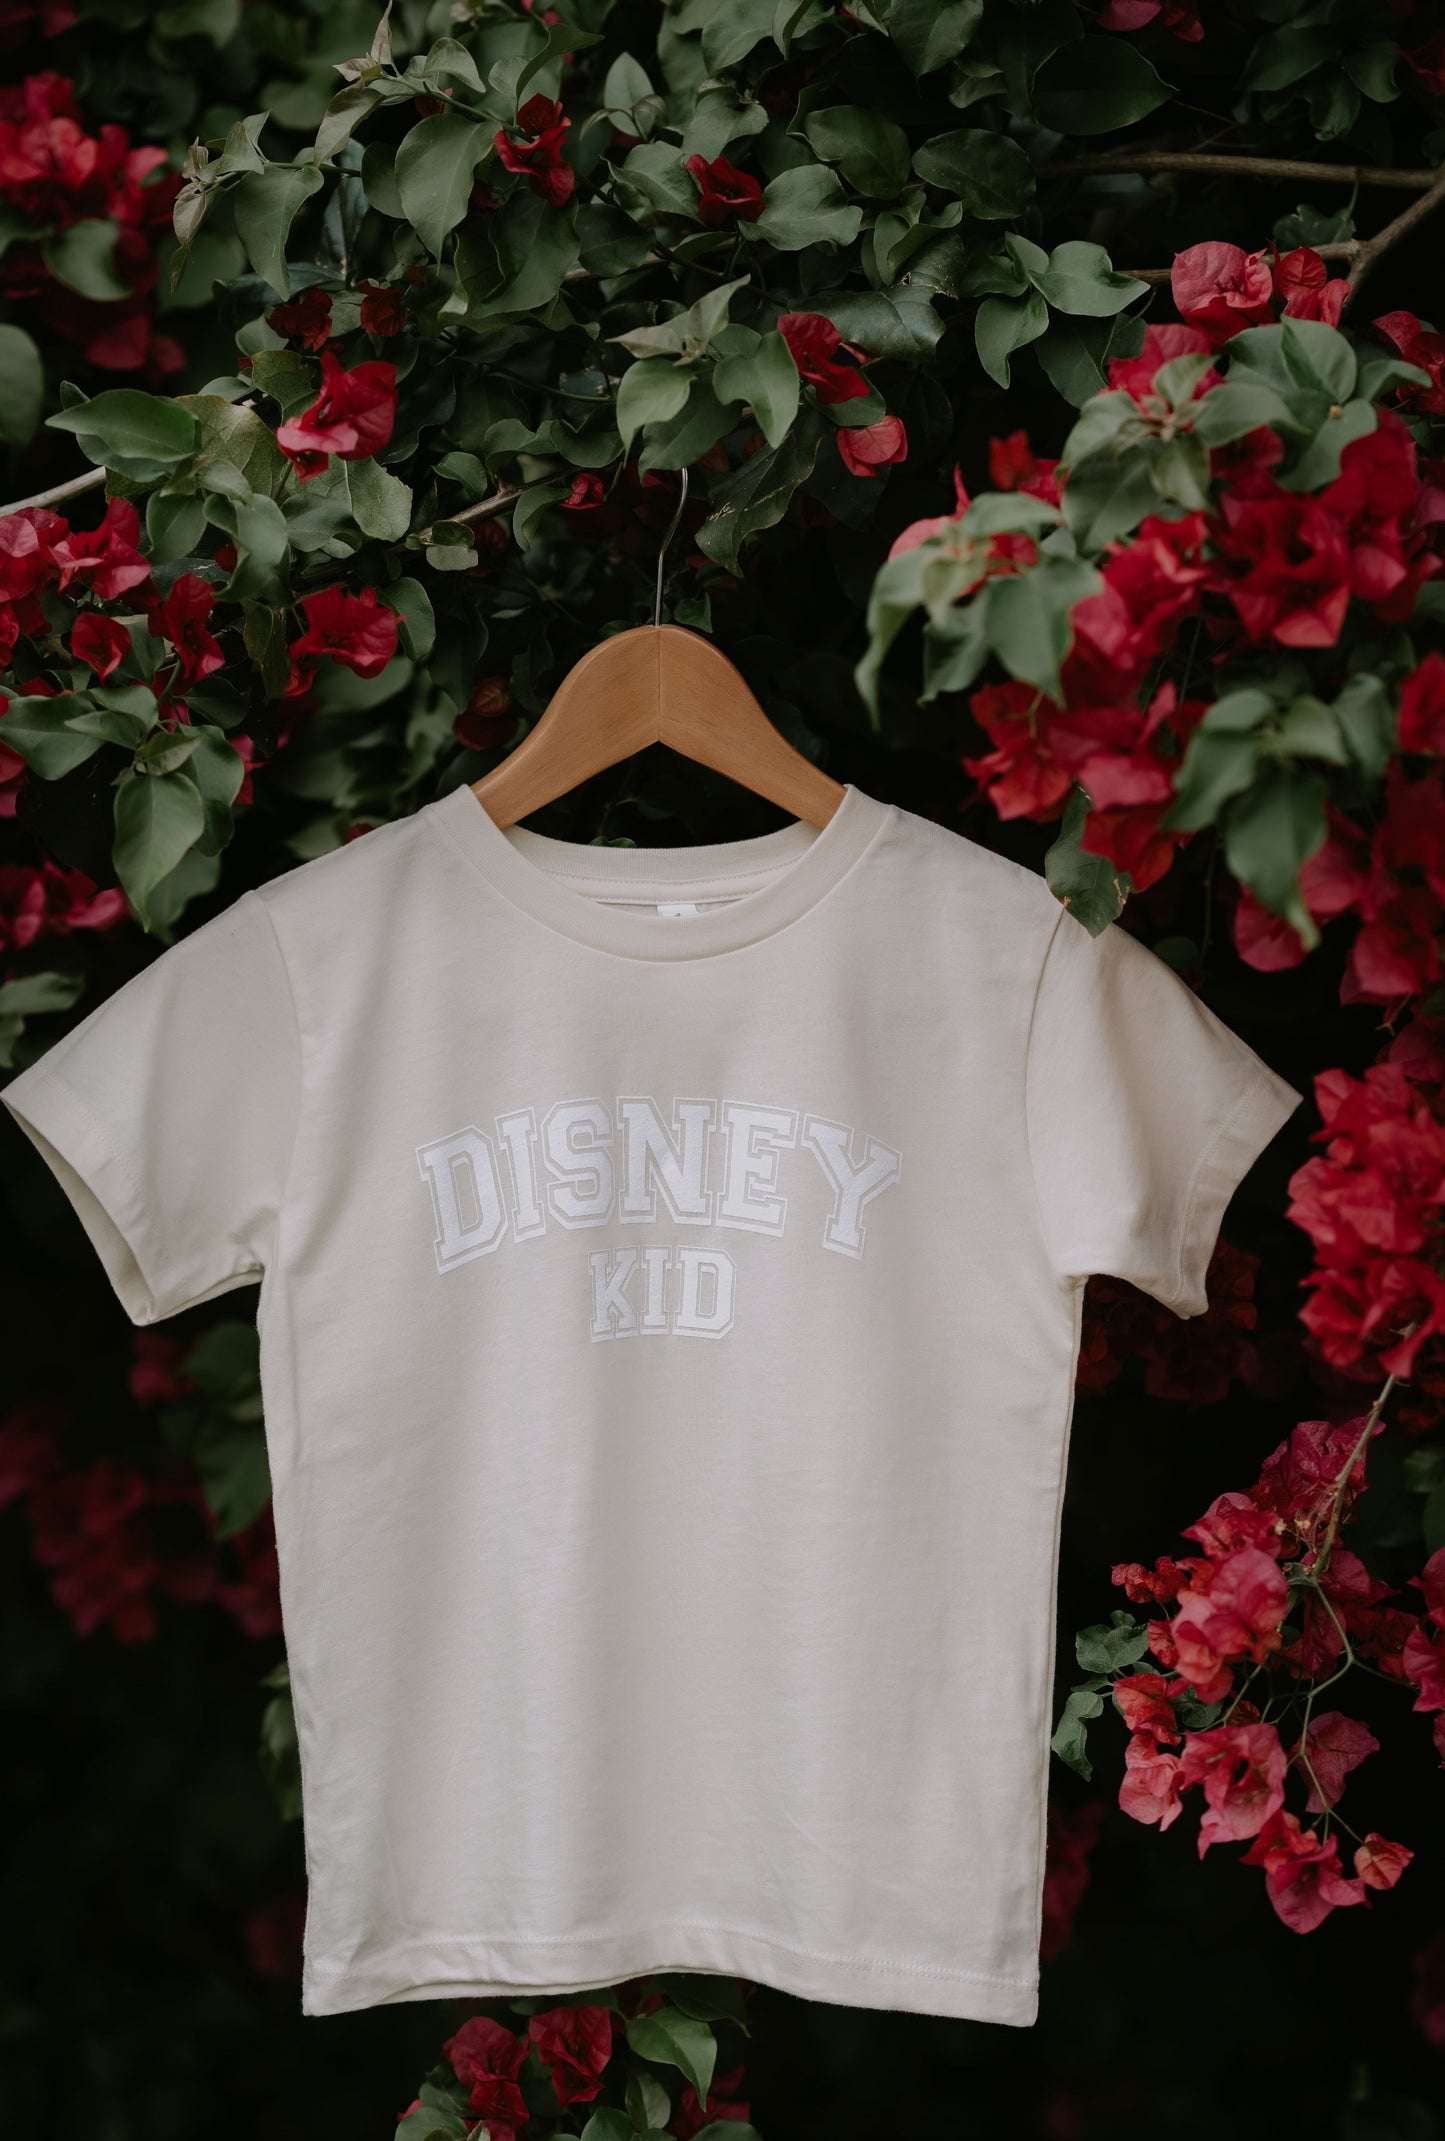 "DISNEY KID" T-shirts